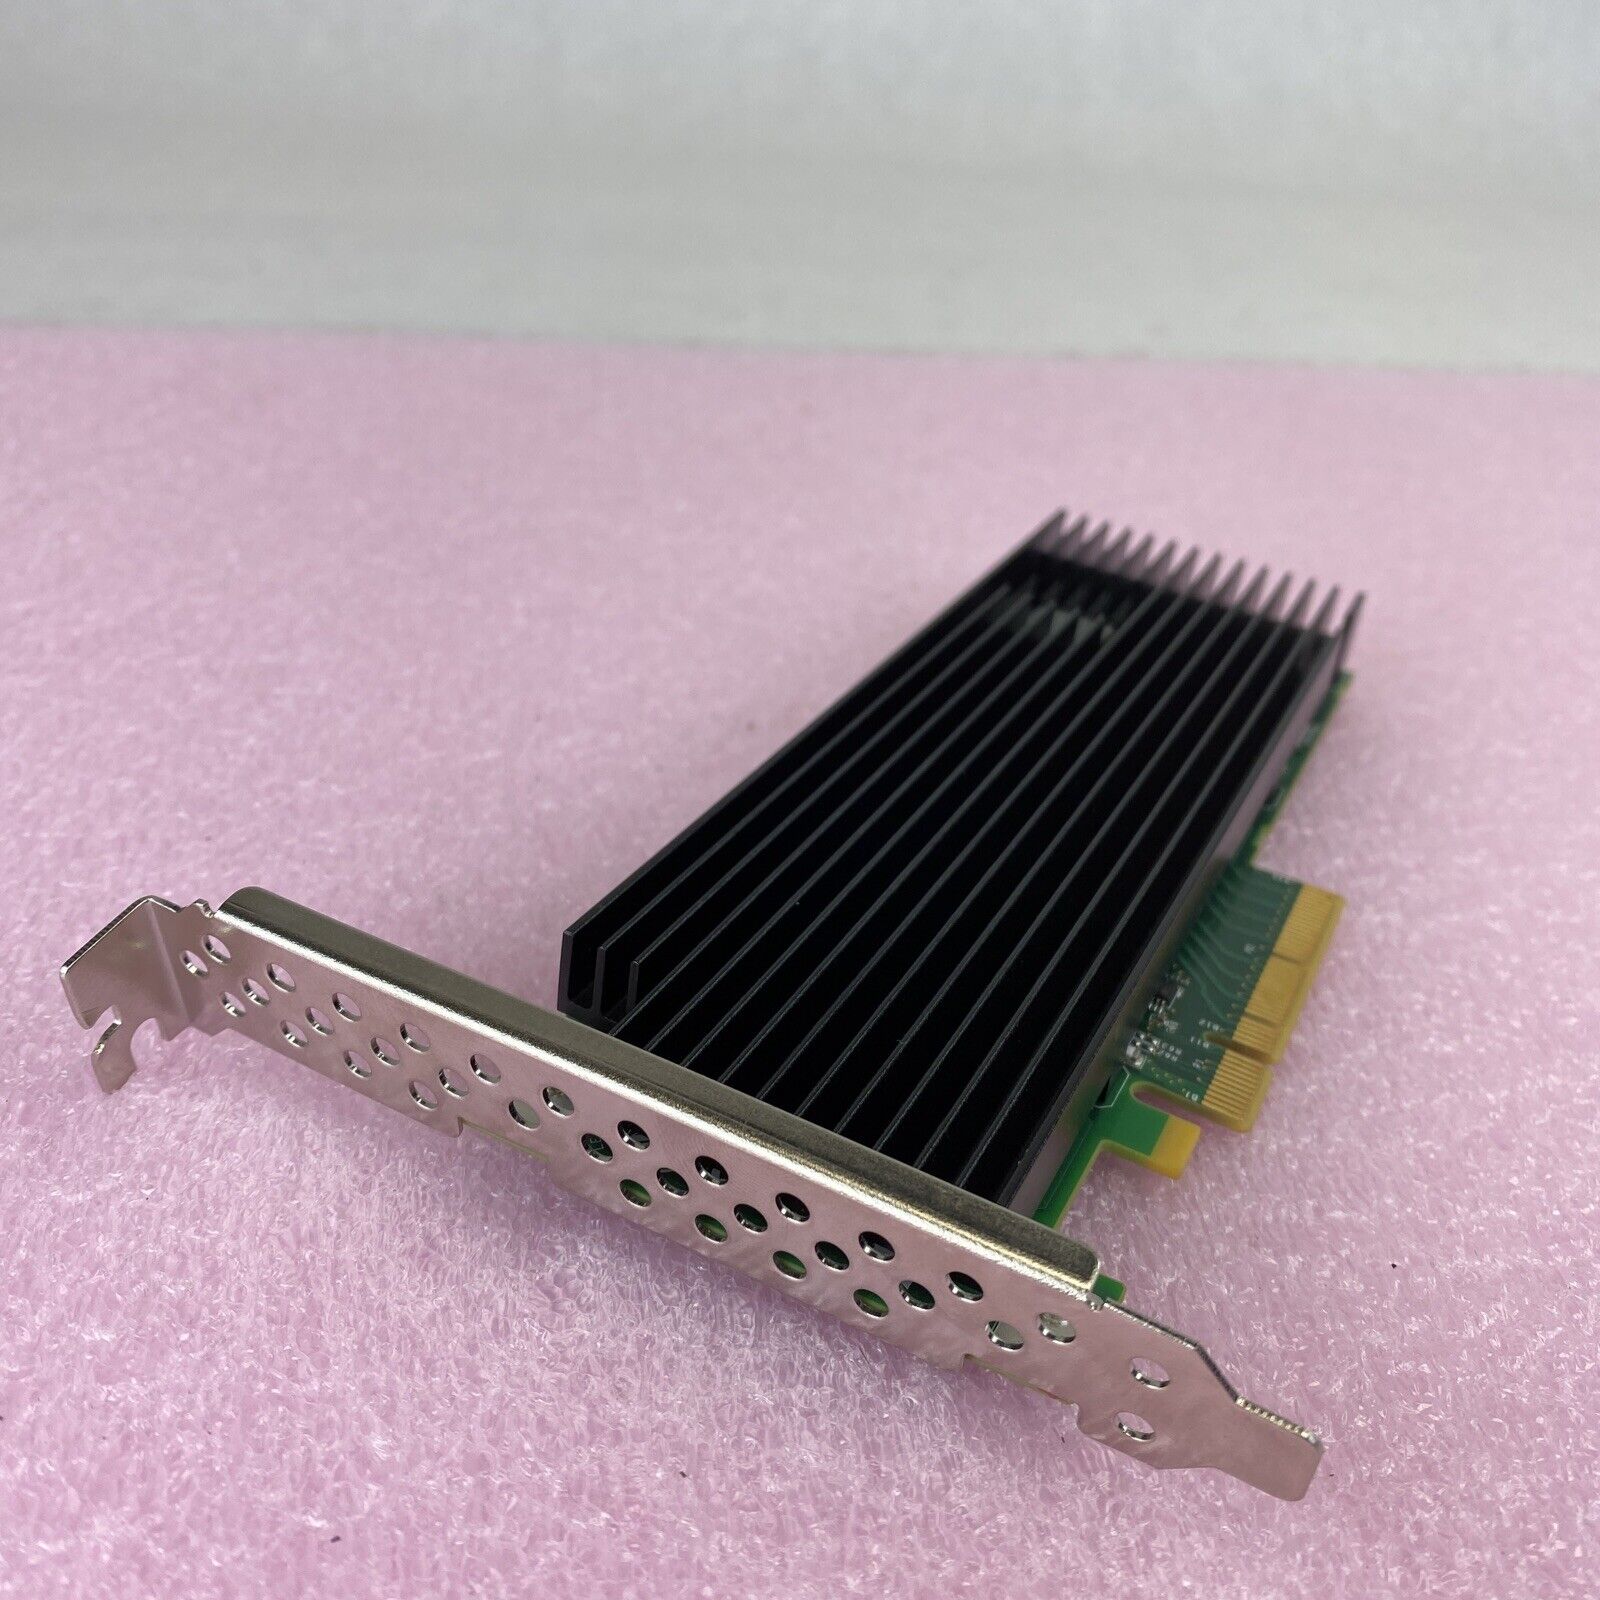 Silicom PE2ISCO1 Accelerator Crypto Compression PCIe server adapter